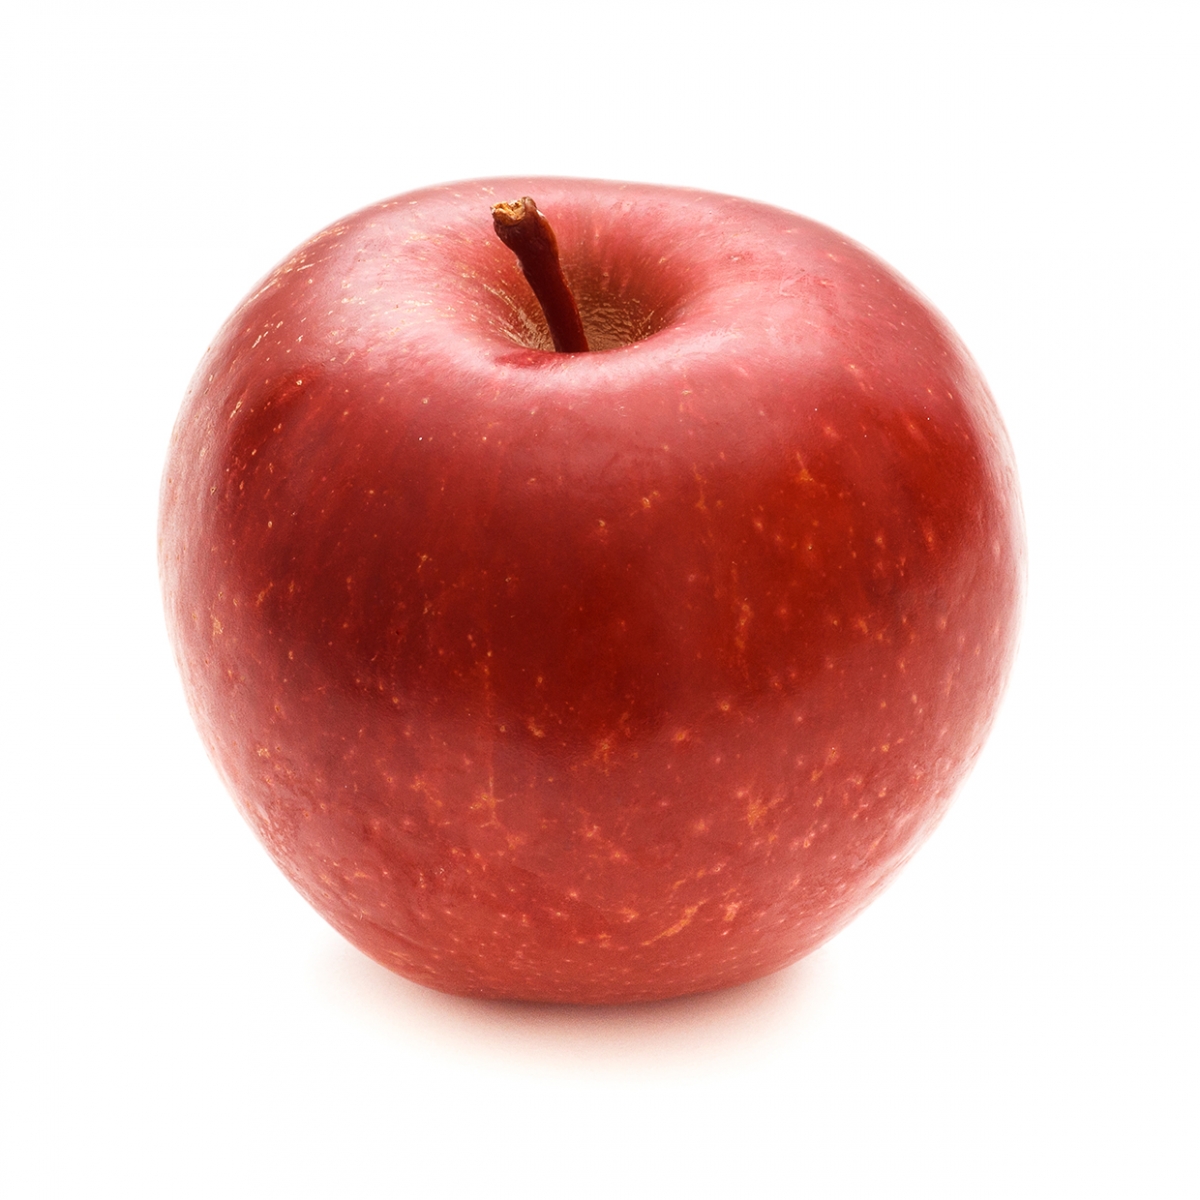 Imagen en la que se ve una manzana roja